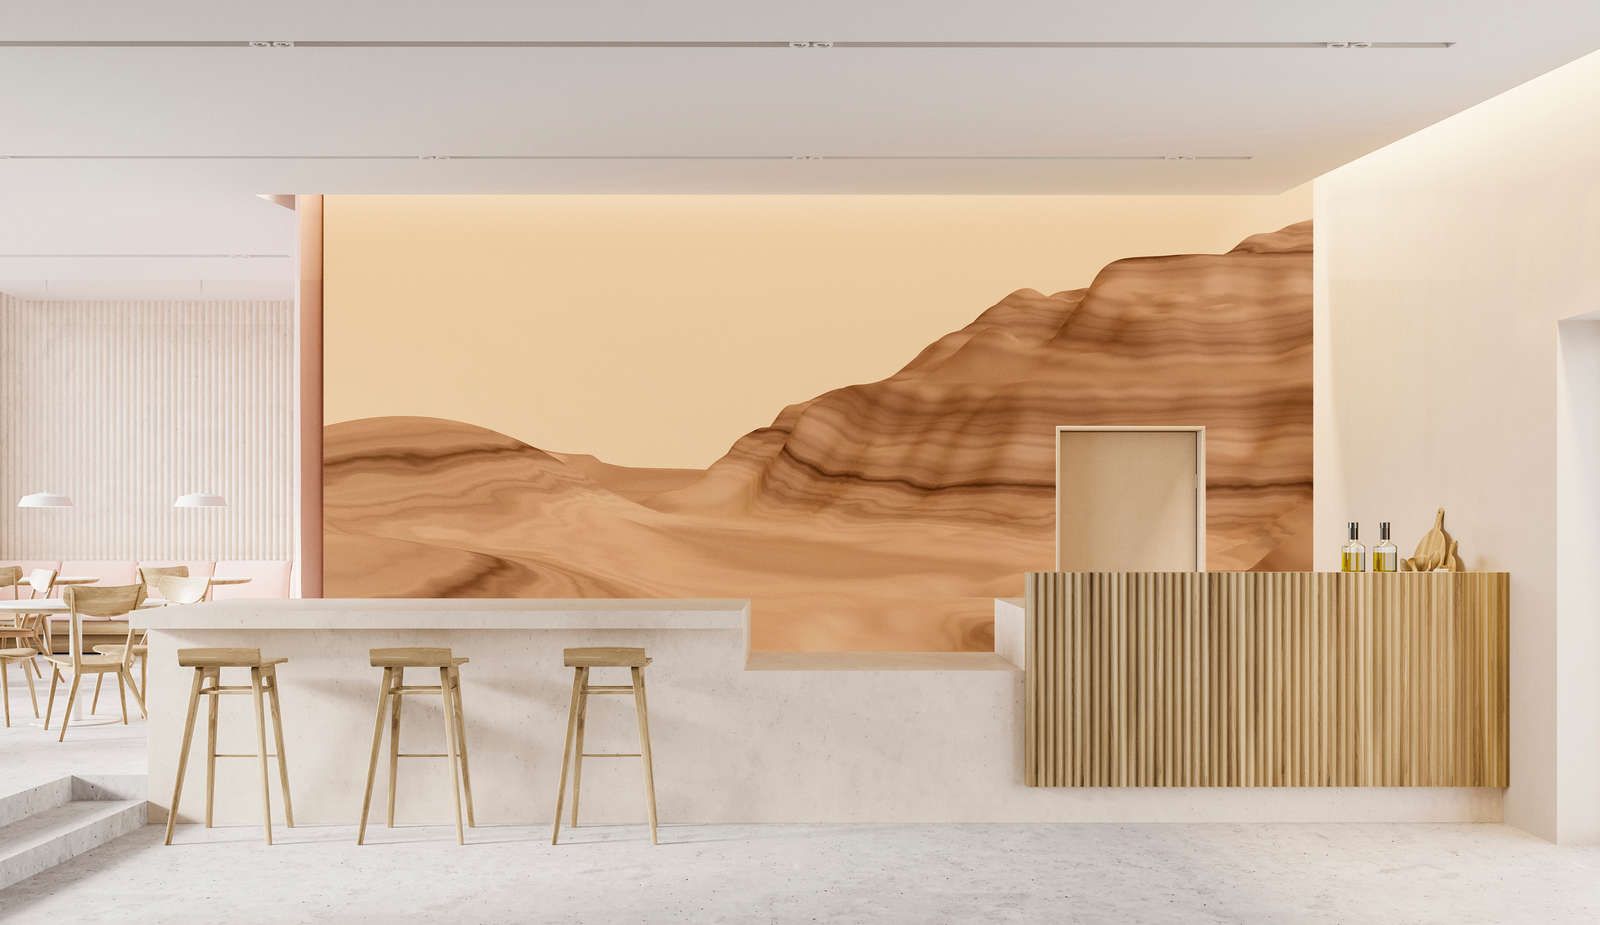             papier peint en papier panoramique »luke« - paysage abstrait du désert - intissé légèrement structuré
        